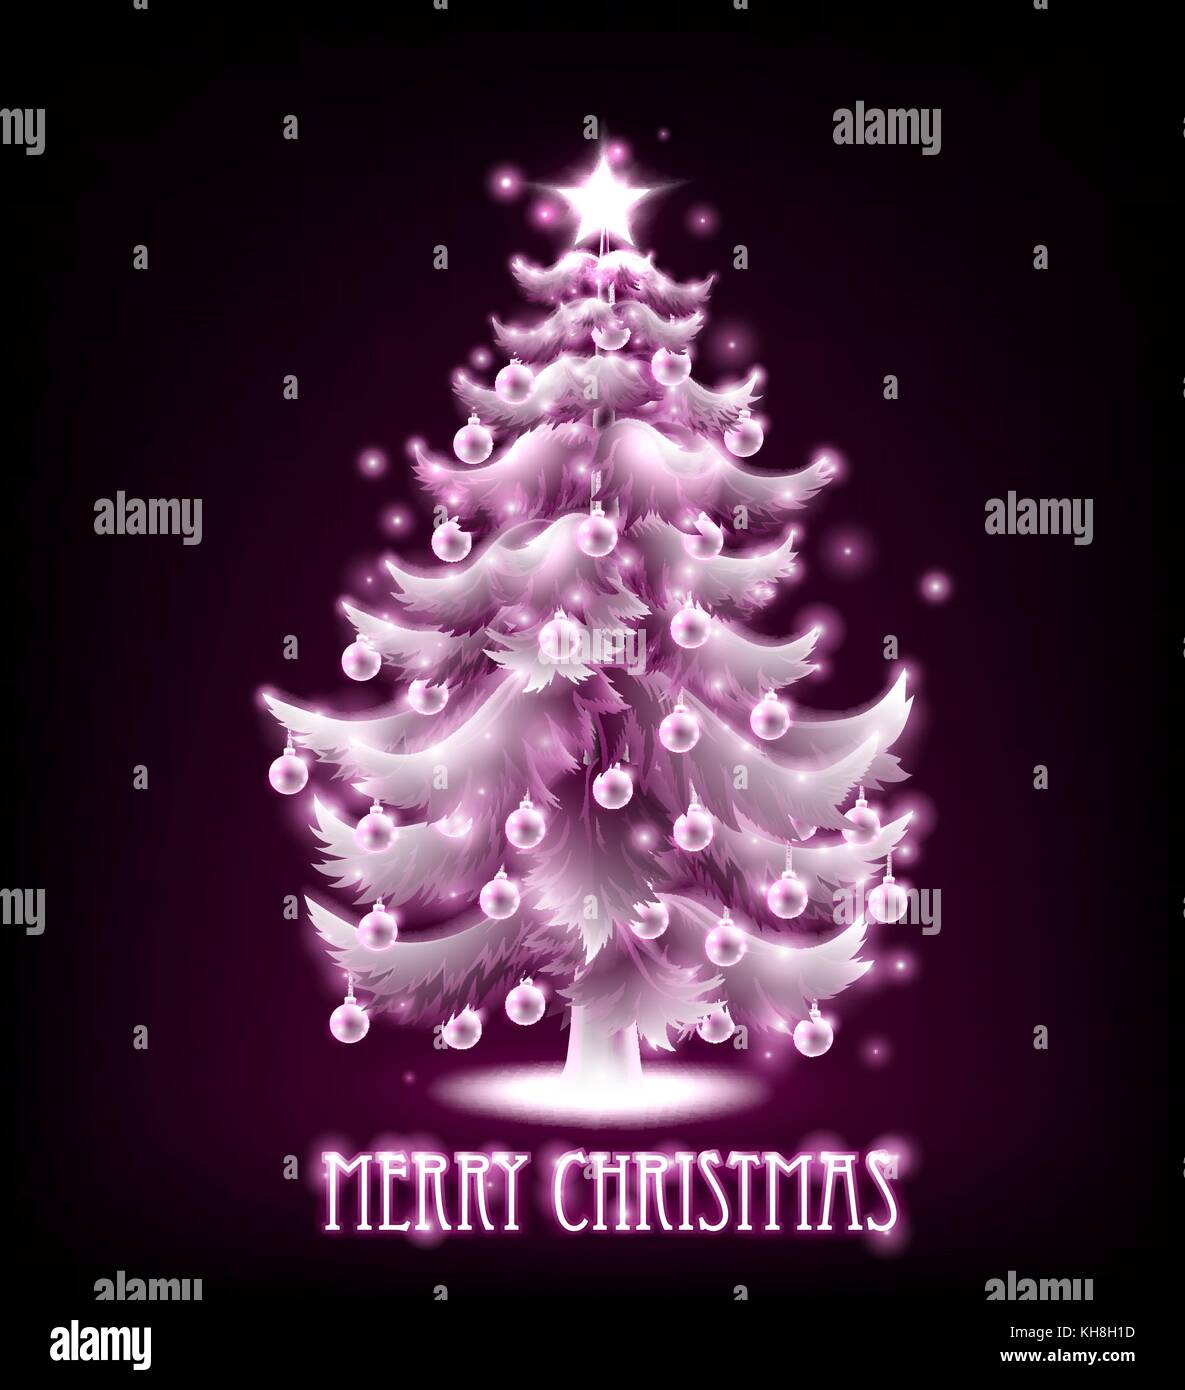 Magical Merry albero di Natale Design Illustrazione Vettoriale